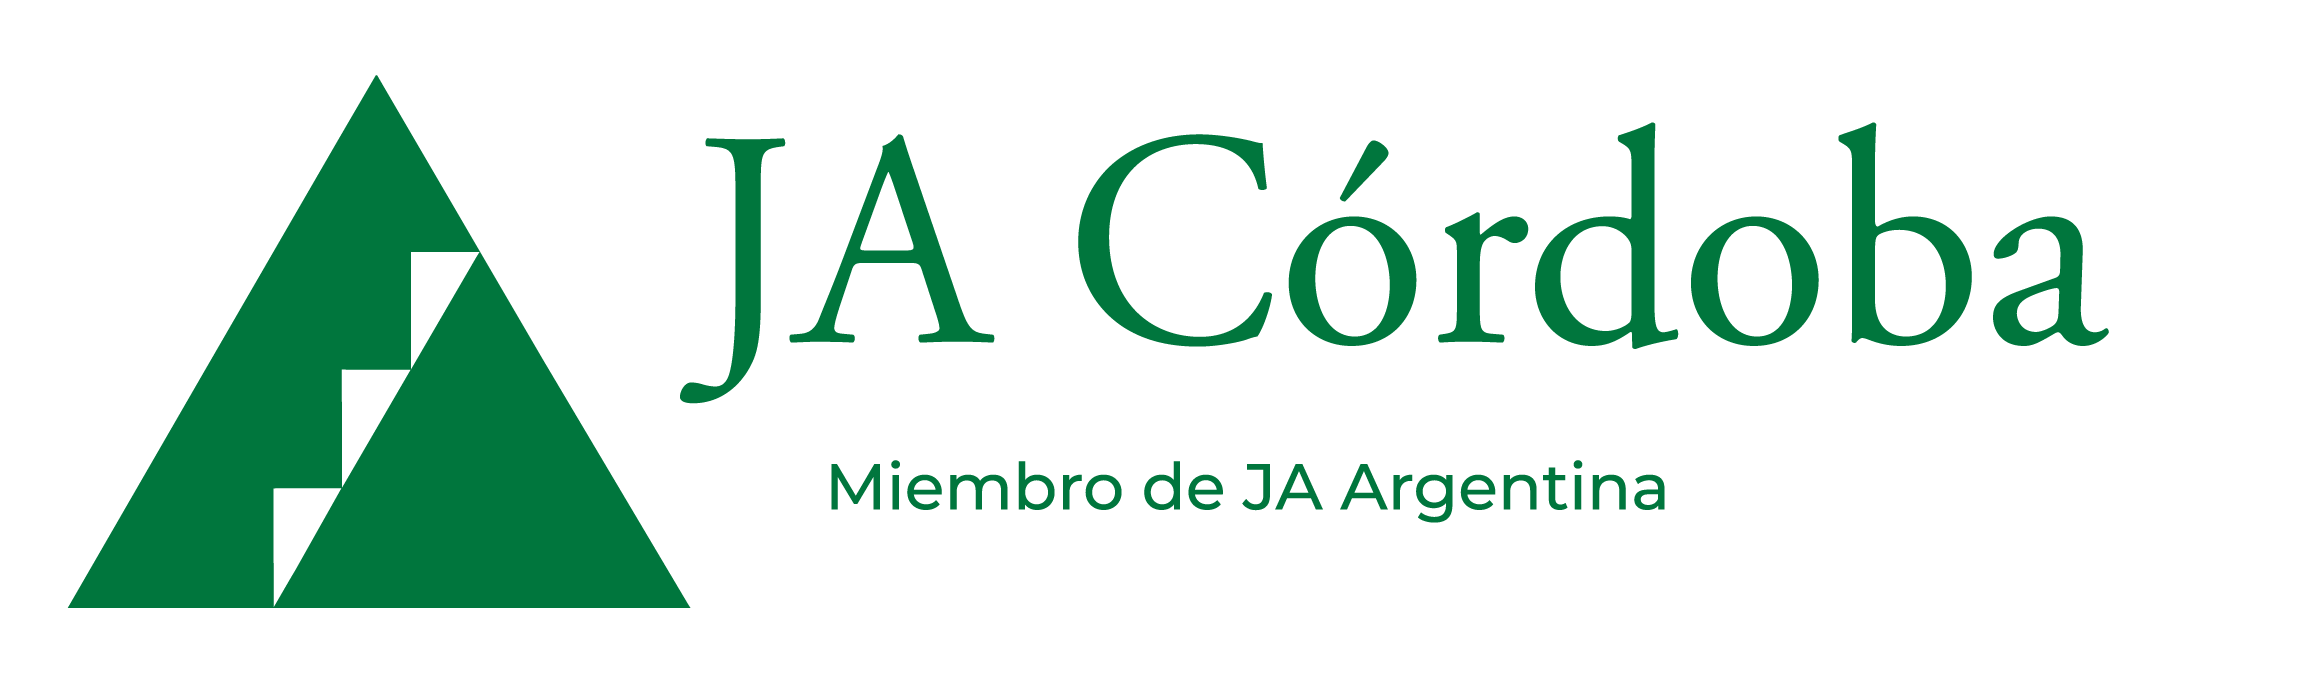 JA Córdoba